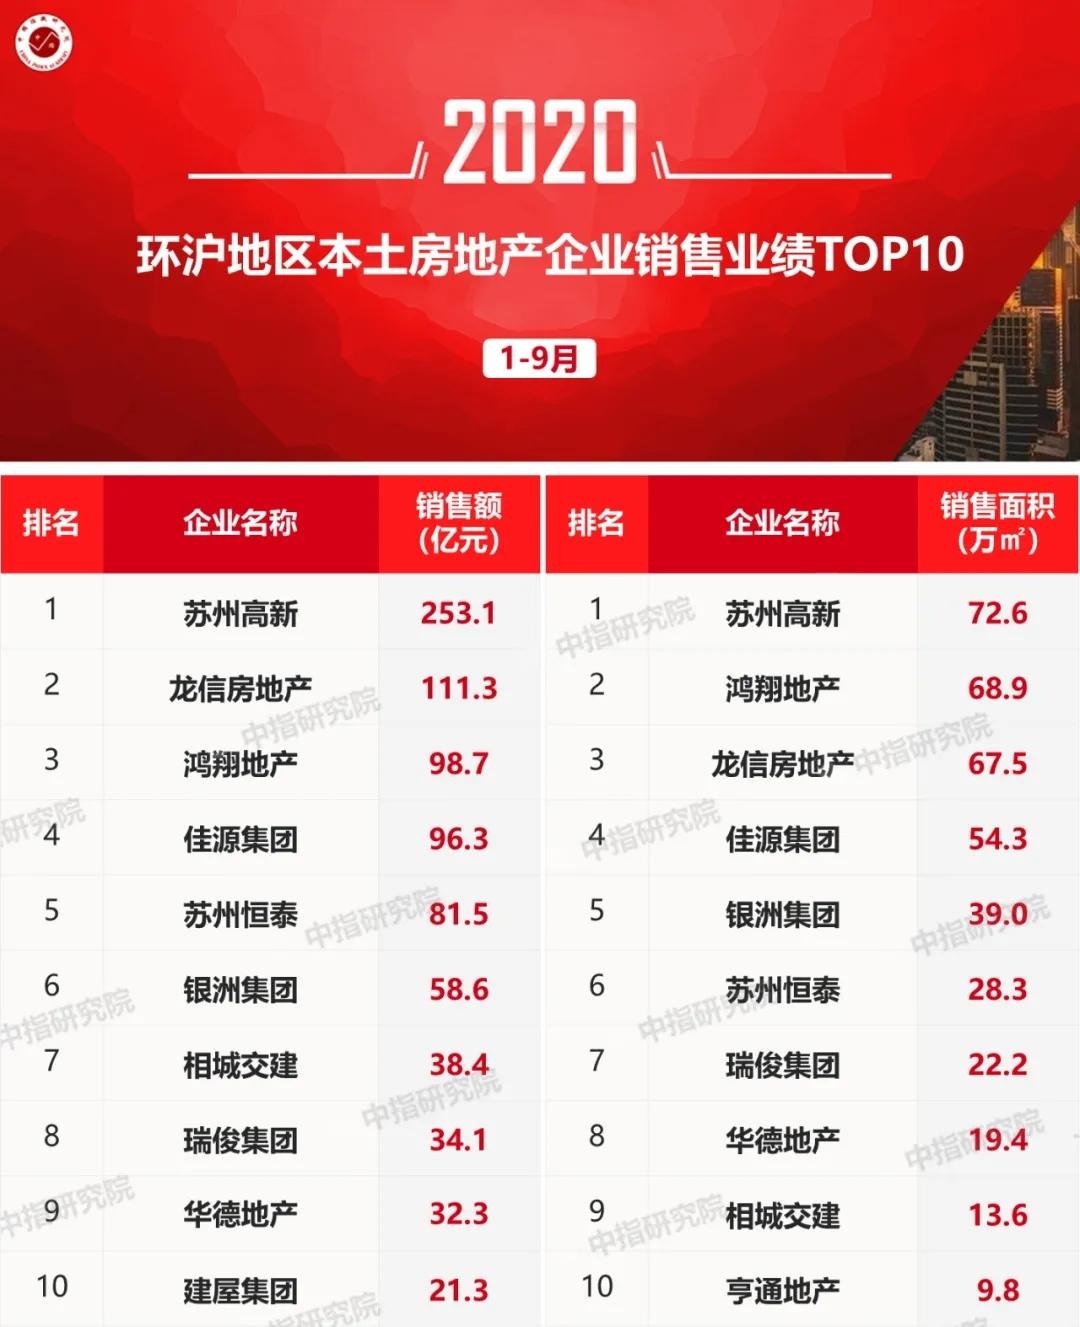 2020年1-9月环沪房地产企业销售业绩排行榜